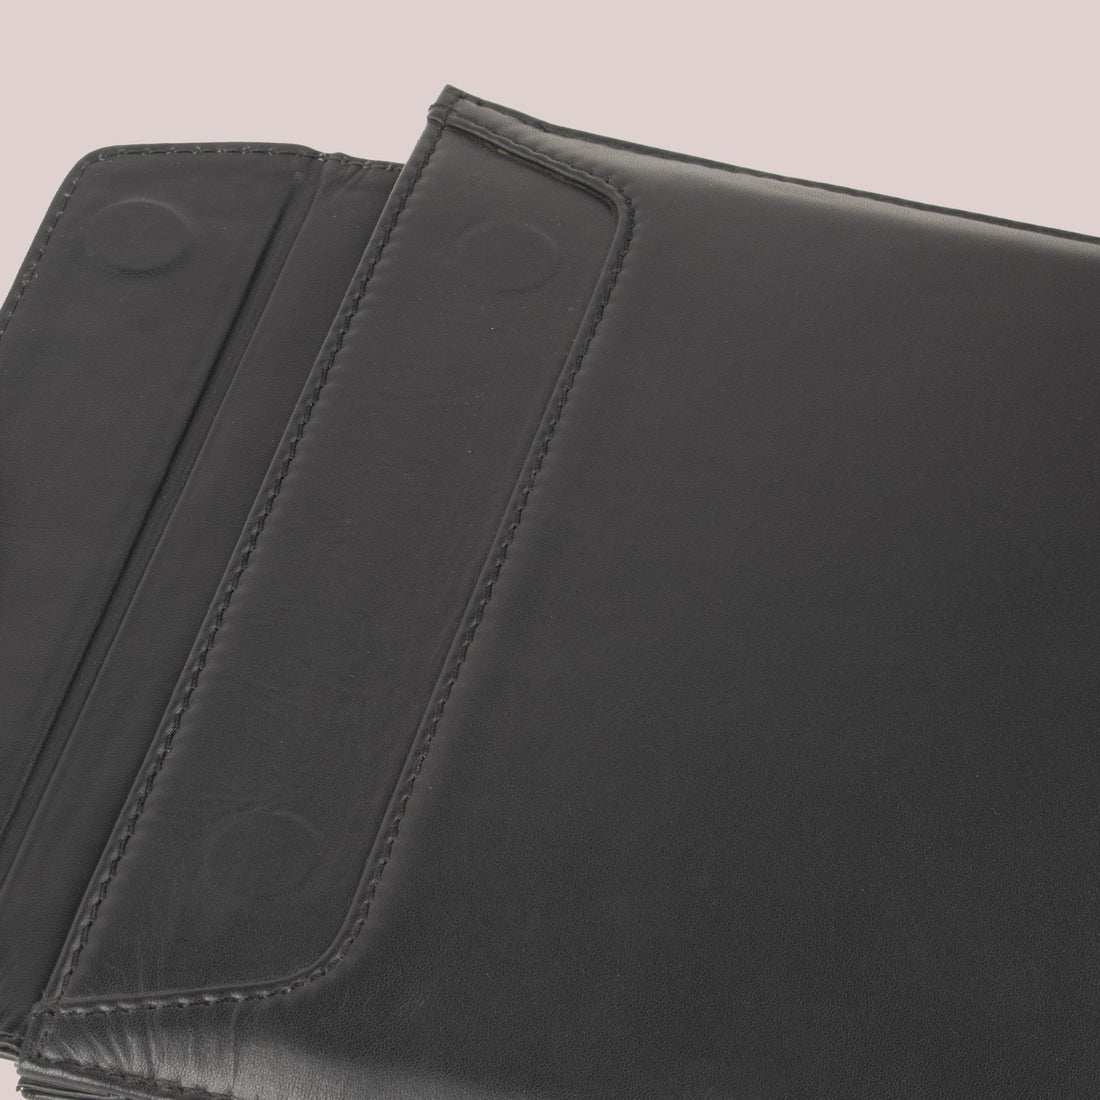 MacBook Note sleeve - Onyx Black